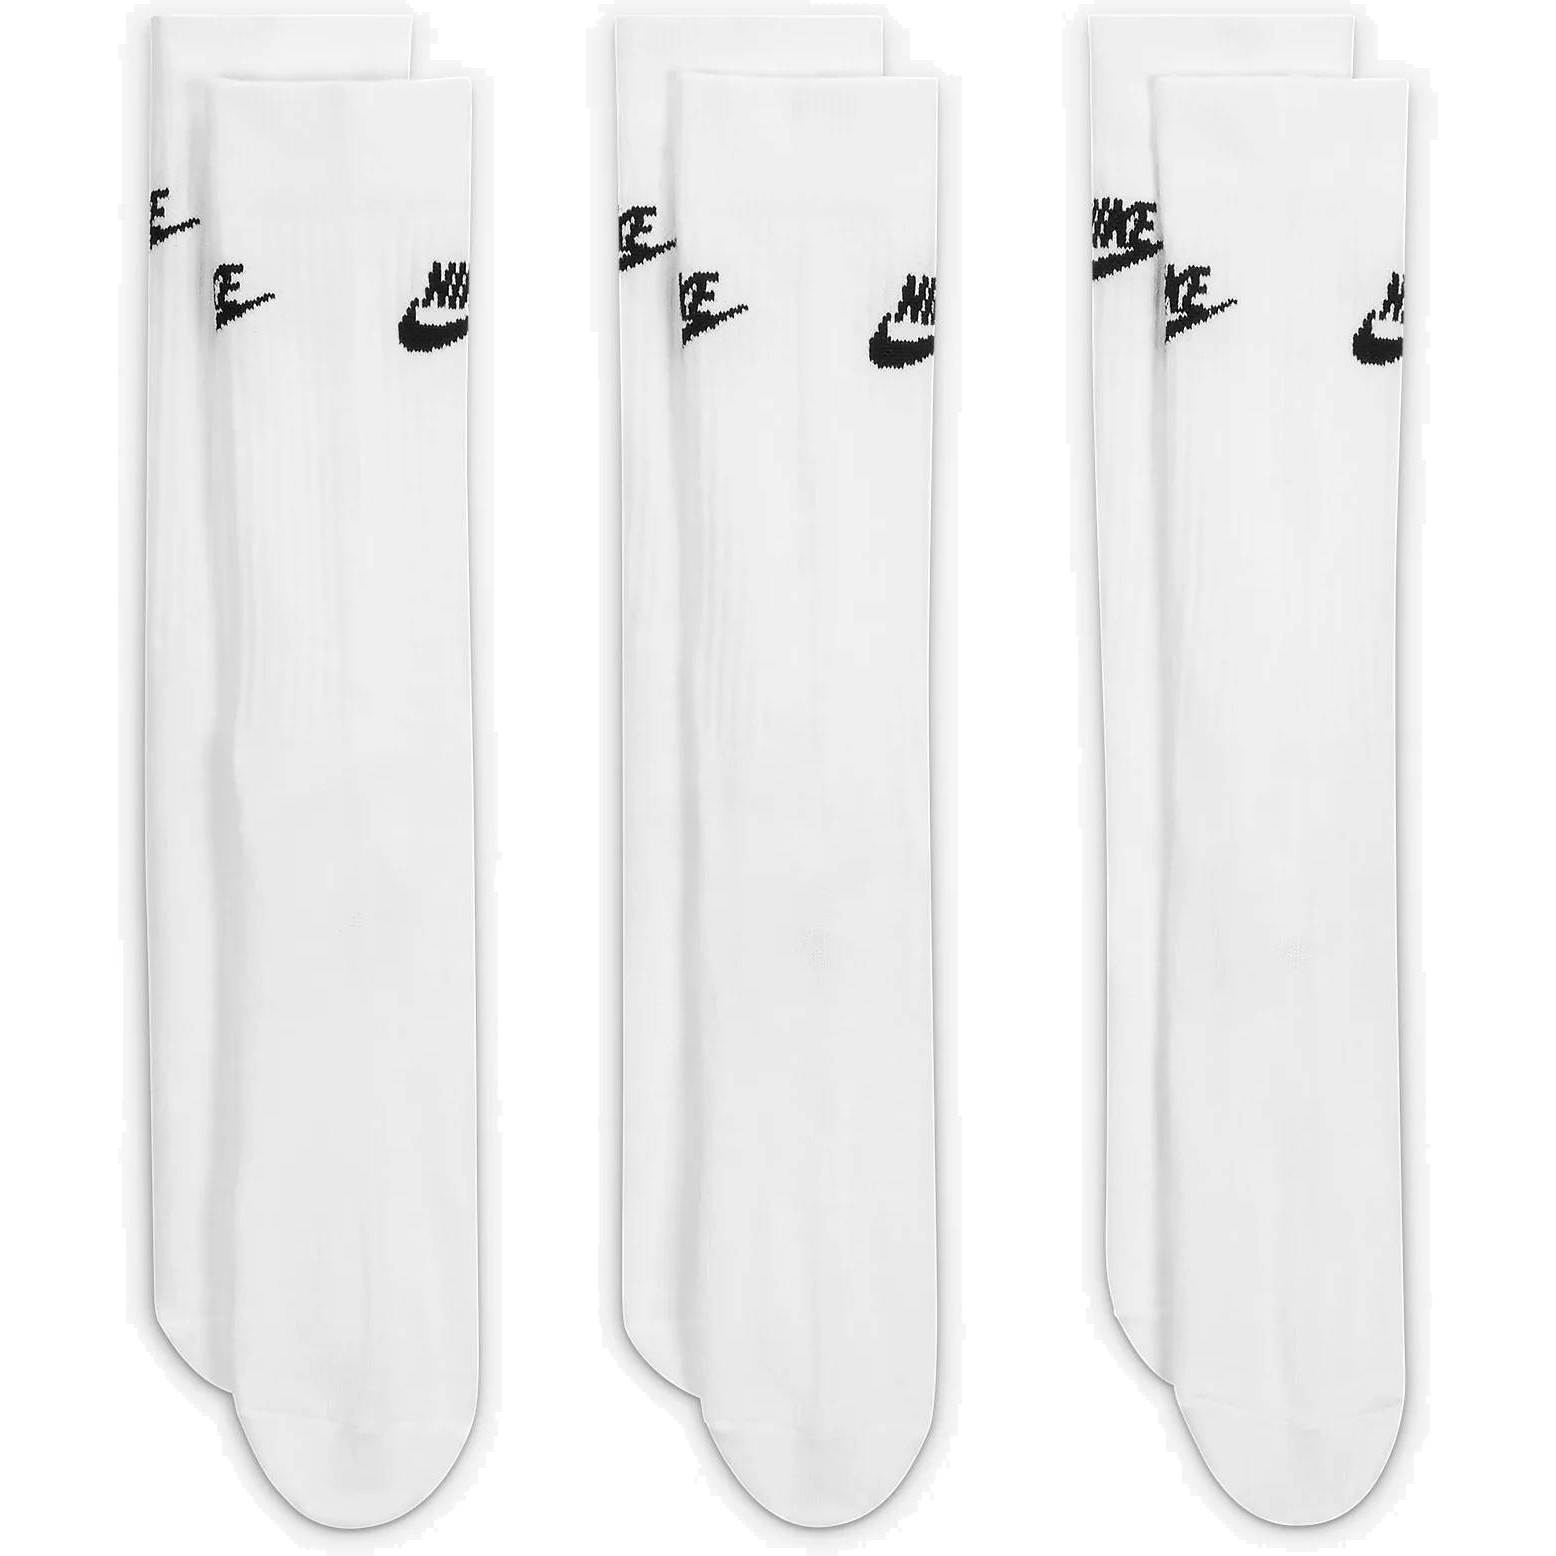 Pack 3 paires de chaussettes Nike basses blanc sur